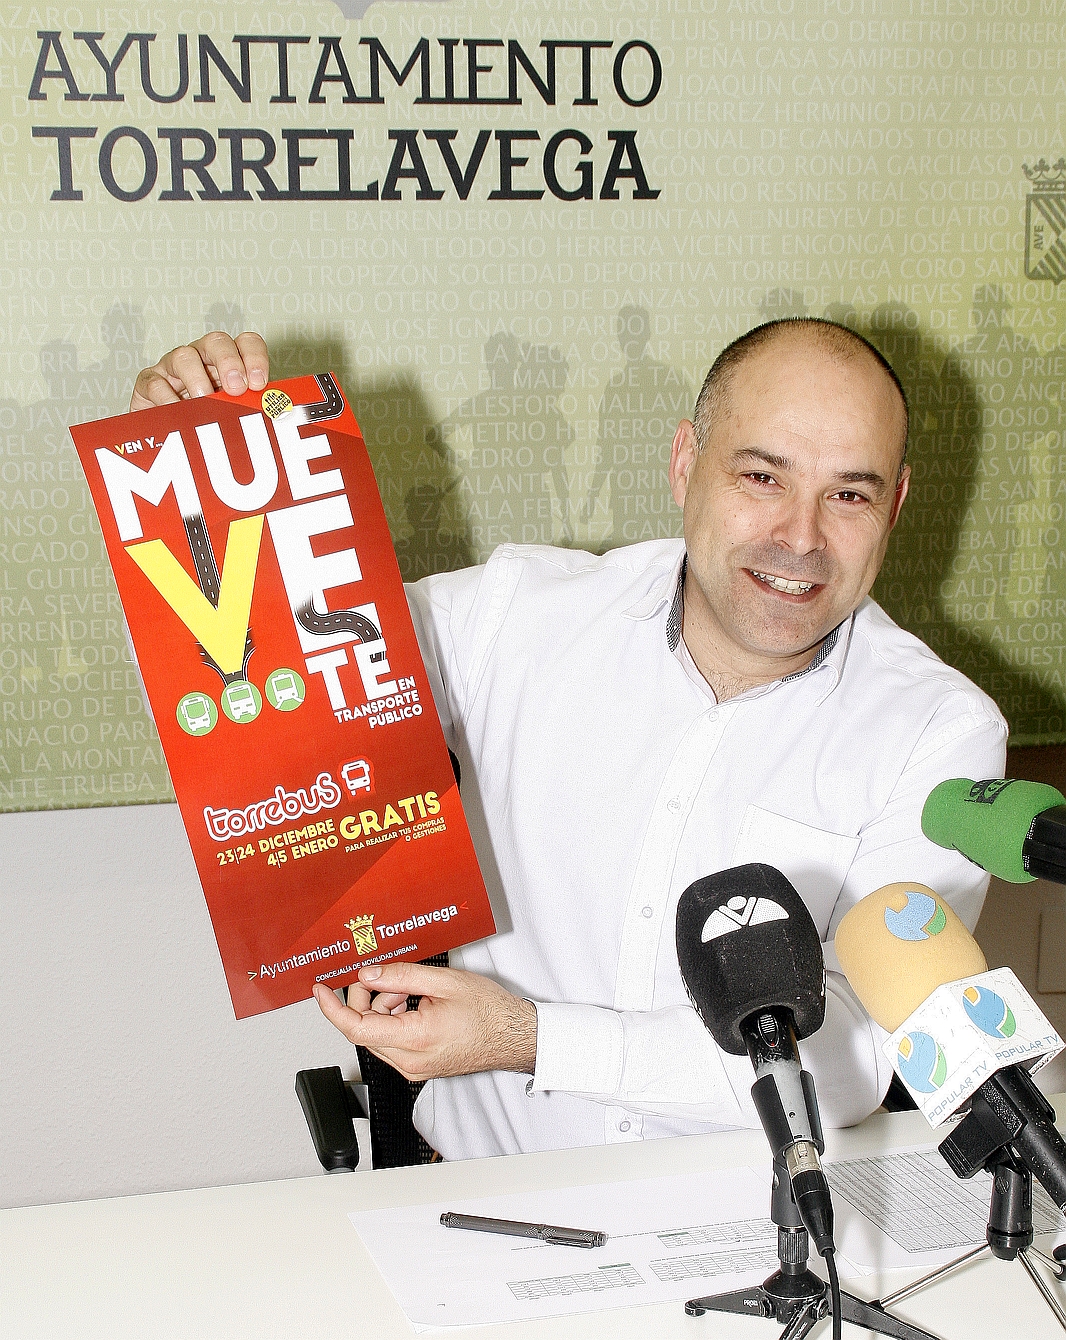 Viajar en Torrebús será gratis los días 23 y 24 de diciembre, 4 y 5 de enero - Javier Melgar Escudero, Torrebús - (C) ESTORRELAVEGA.COM